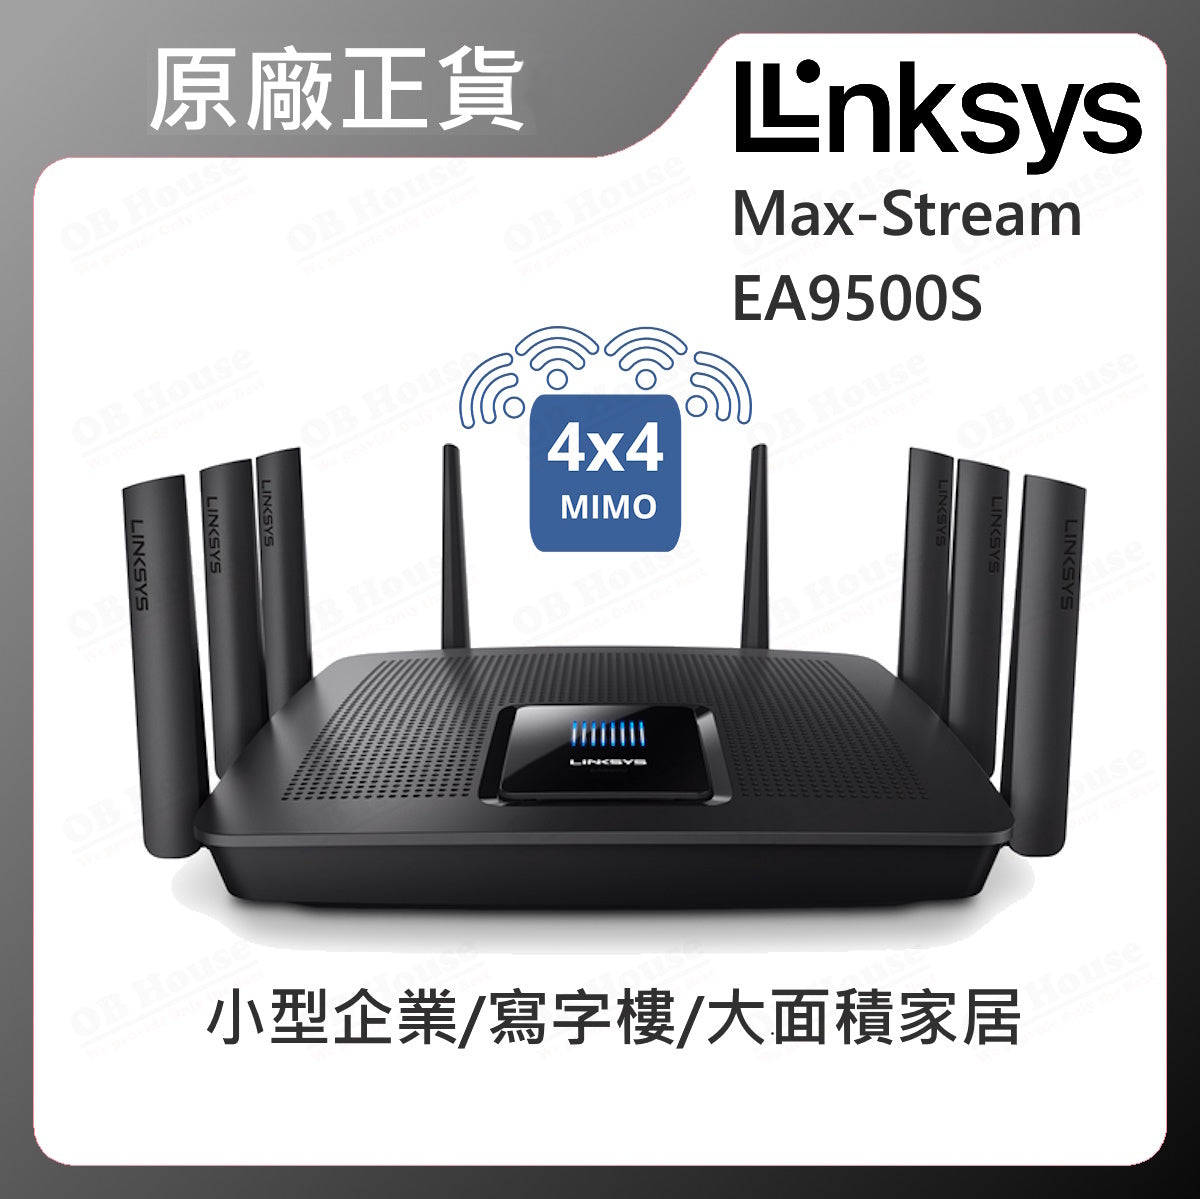 Max-Stream EA9500S-AH AC5400 MU-MIMO Gigabit Wi-Fi 路由器